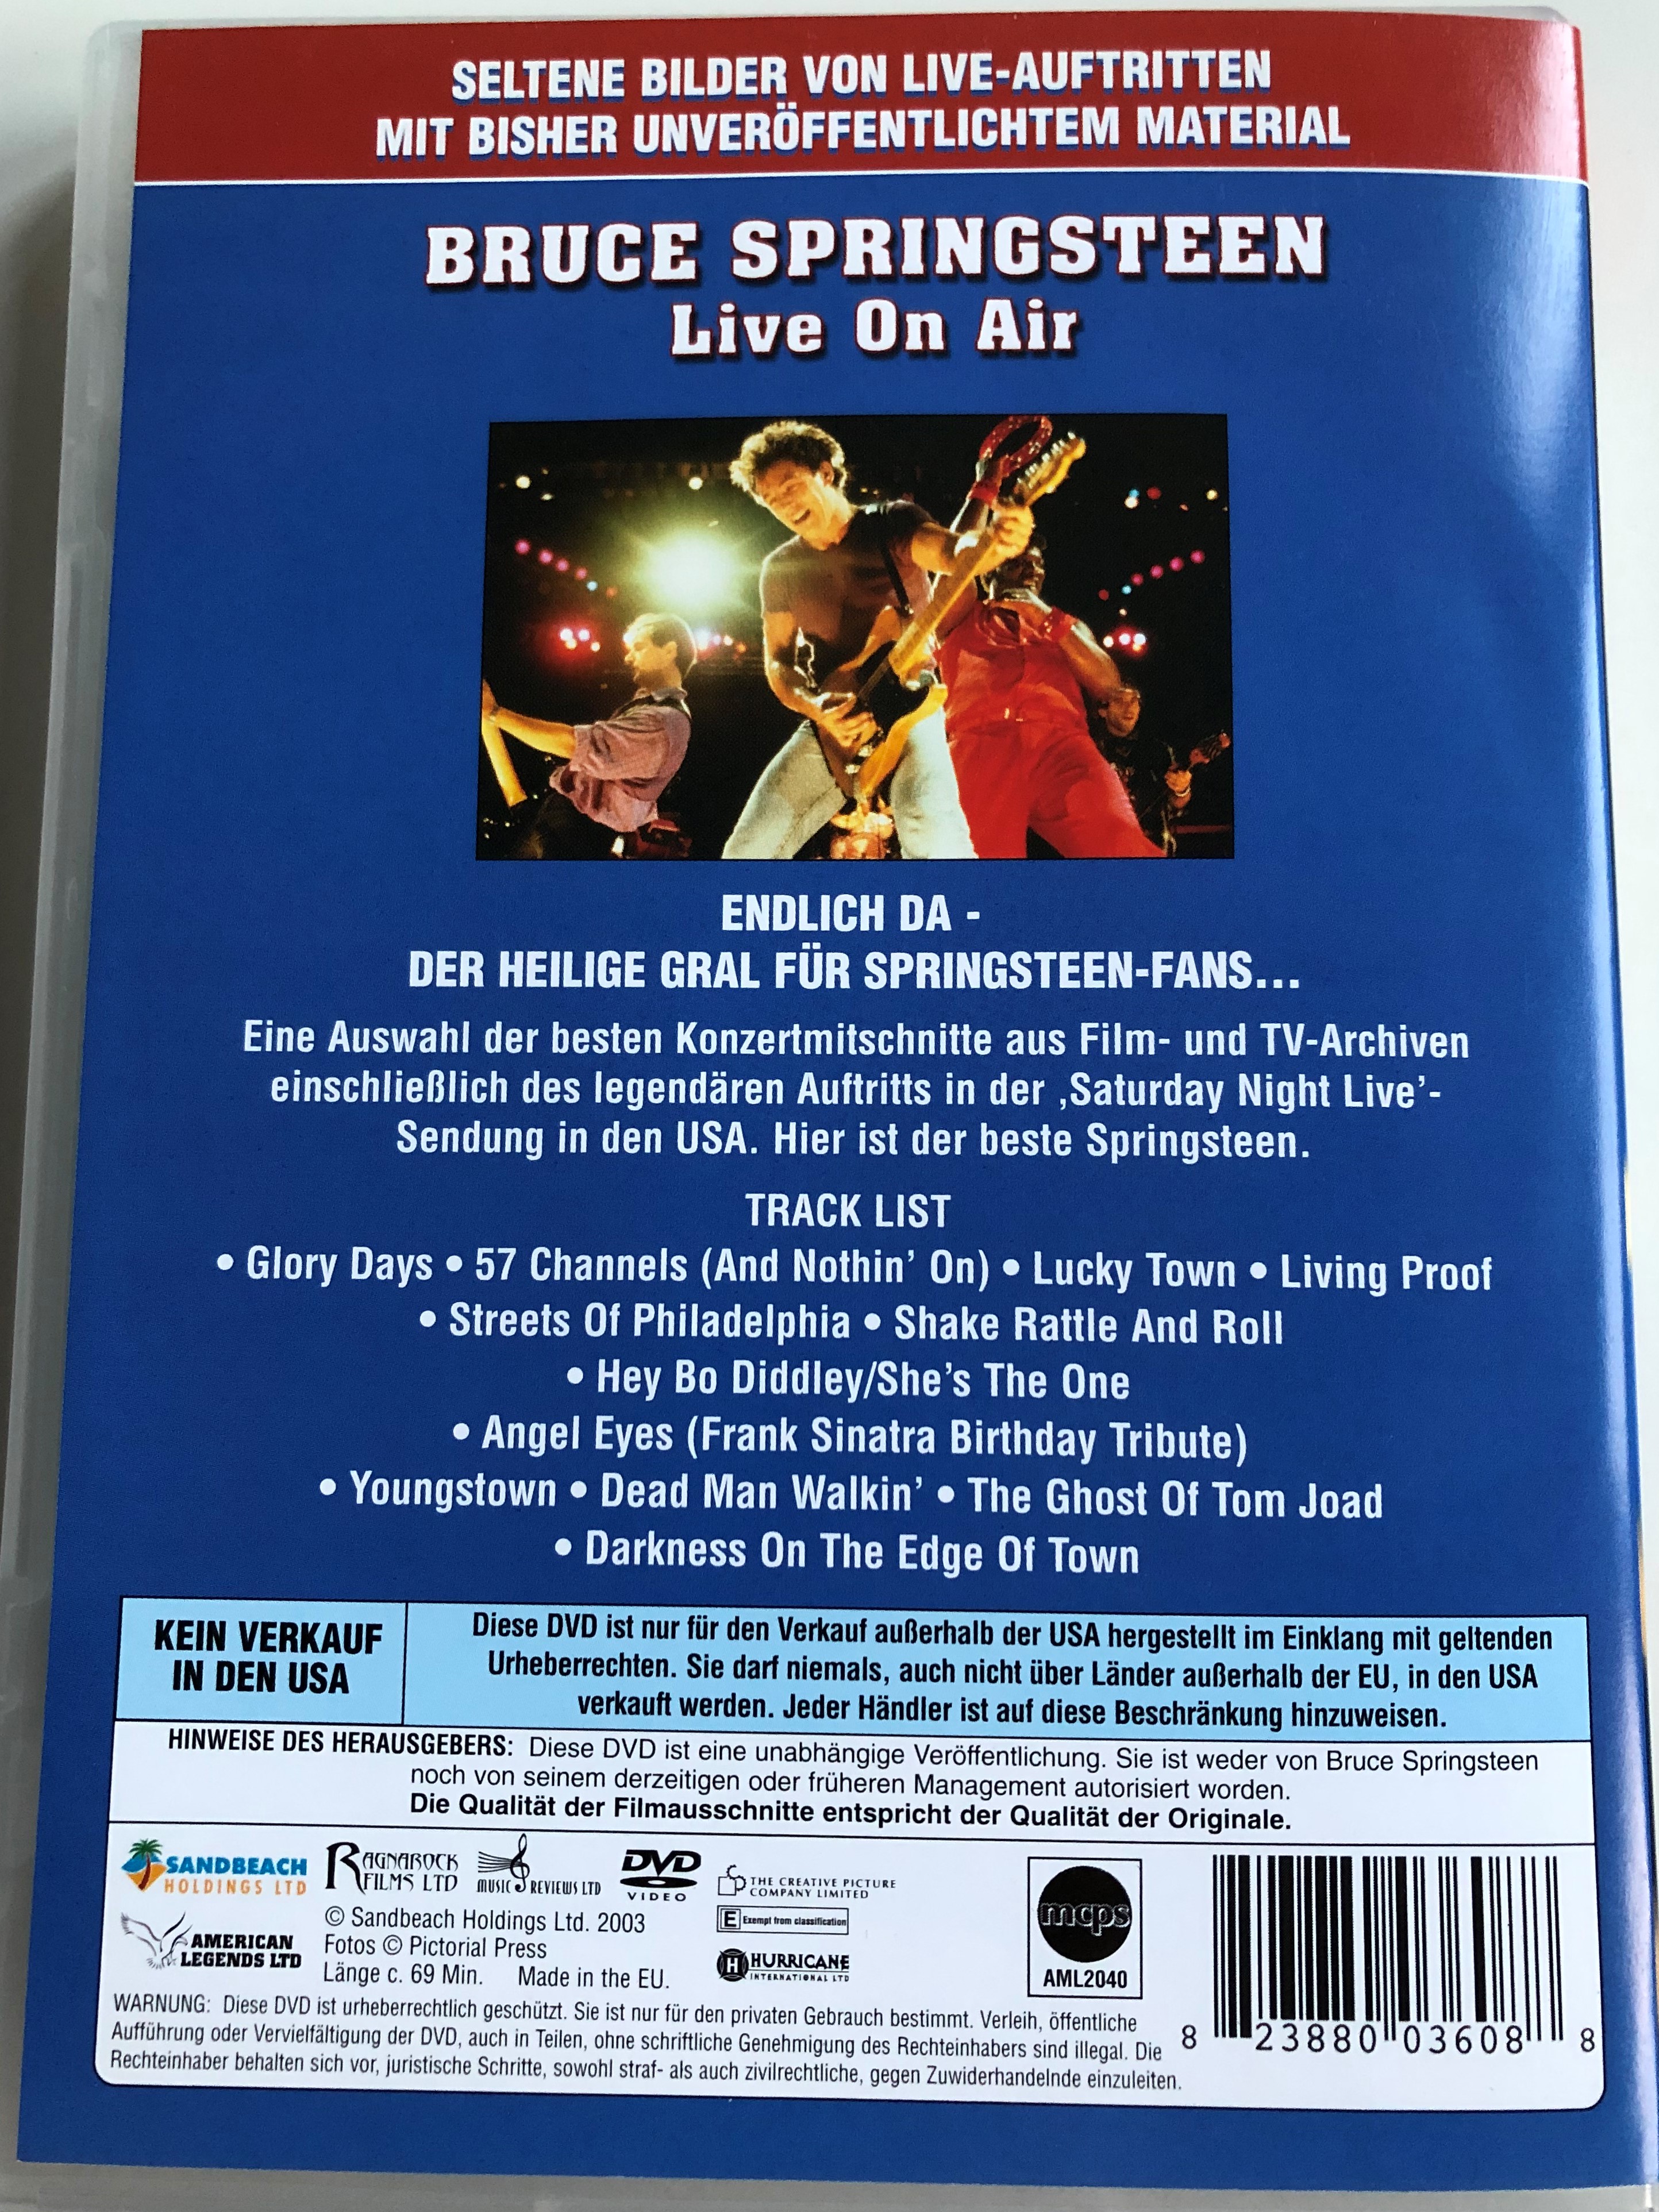 bruce-springsteen-live-on-air-dvd-2005-seltene-bilder-von-live-auftritten-2.jpg